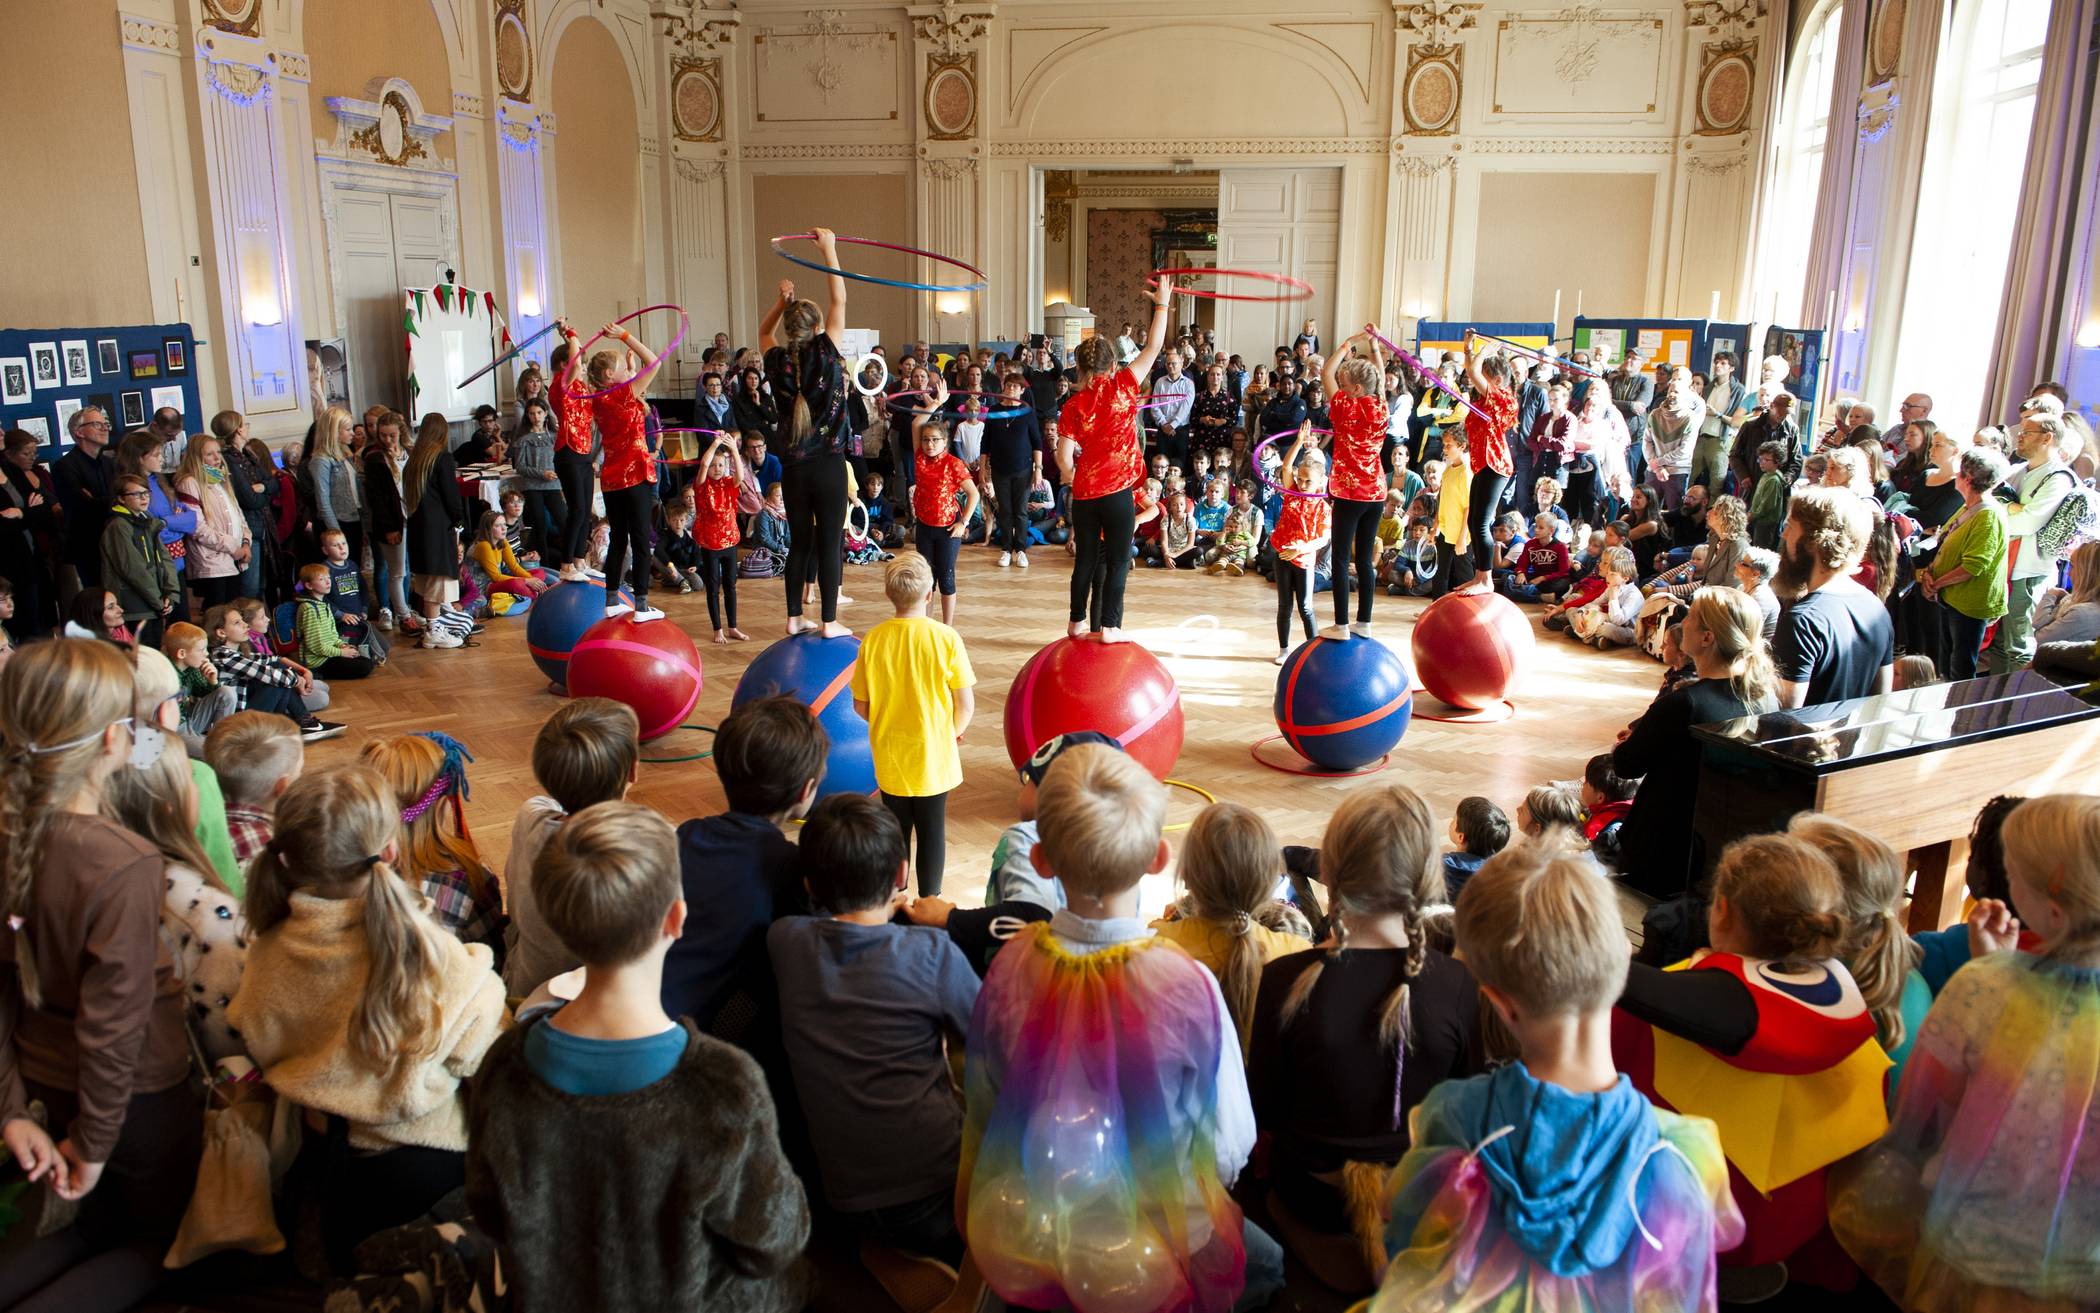  Viel Programm in der Historischen Stadthalle zum Jubiläum „100 Jahre Waldorfschule“, das fünf benachbarte Schulen zusammen feierten.  